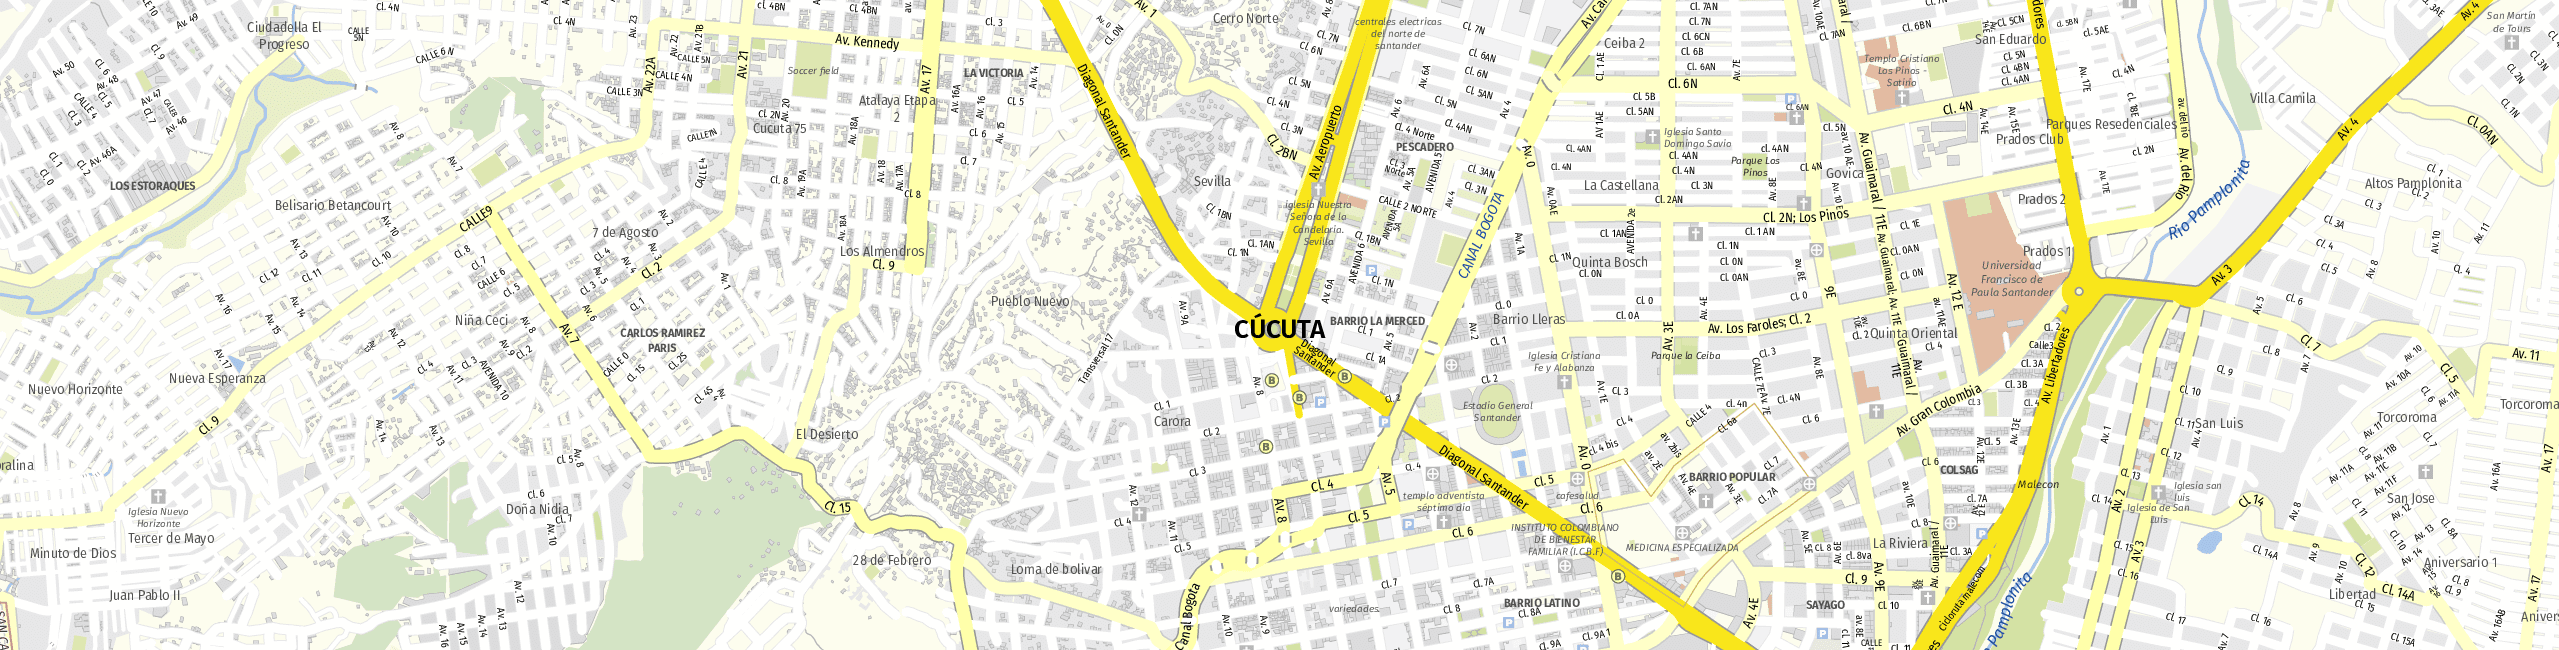 Stadtplan Cúcuta zum Downloaden.